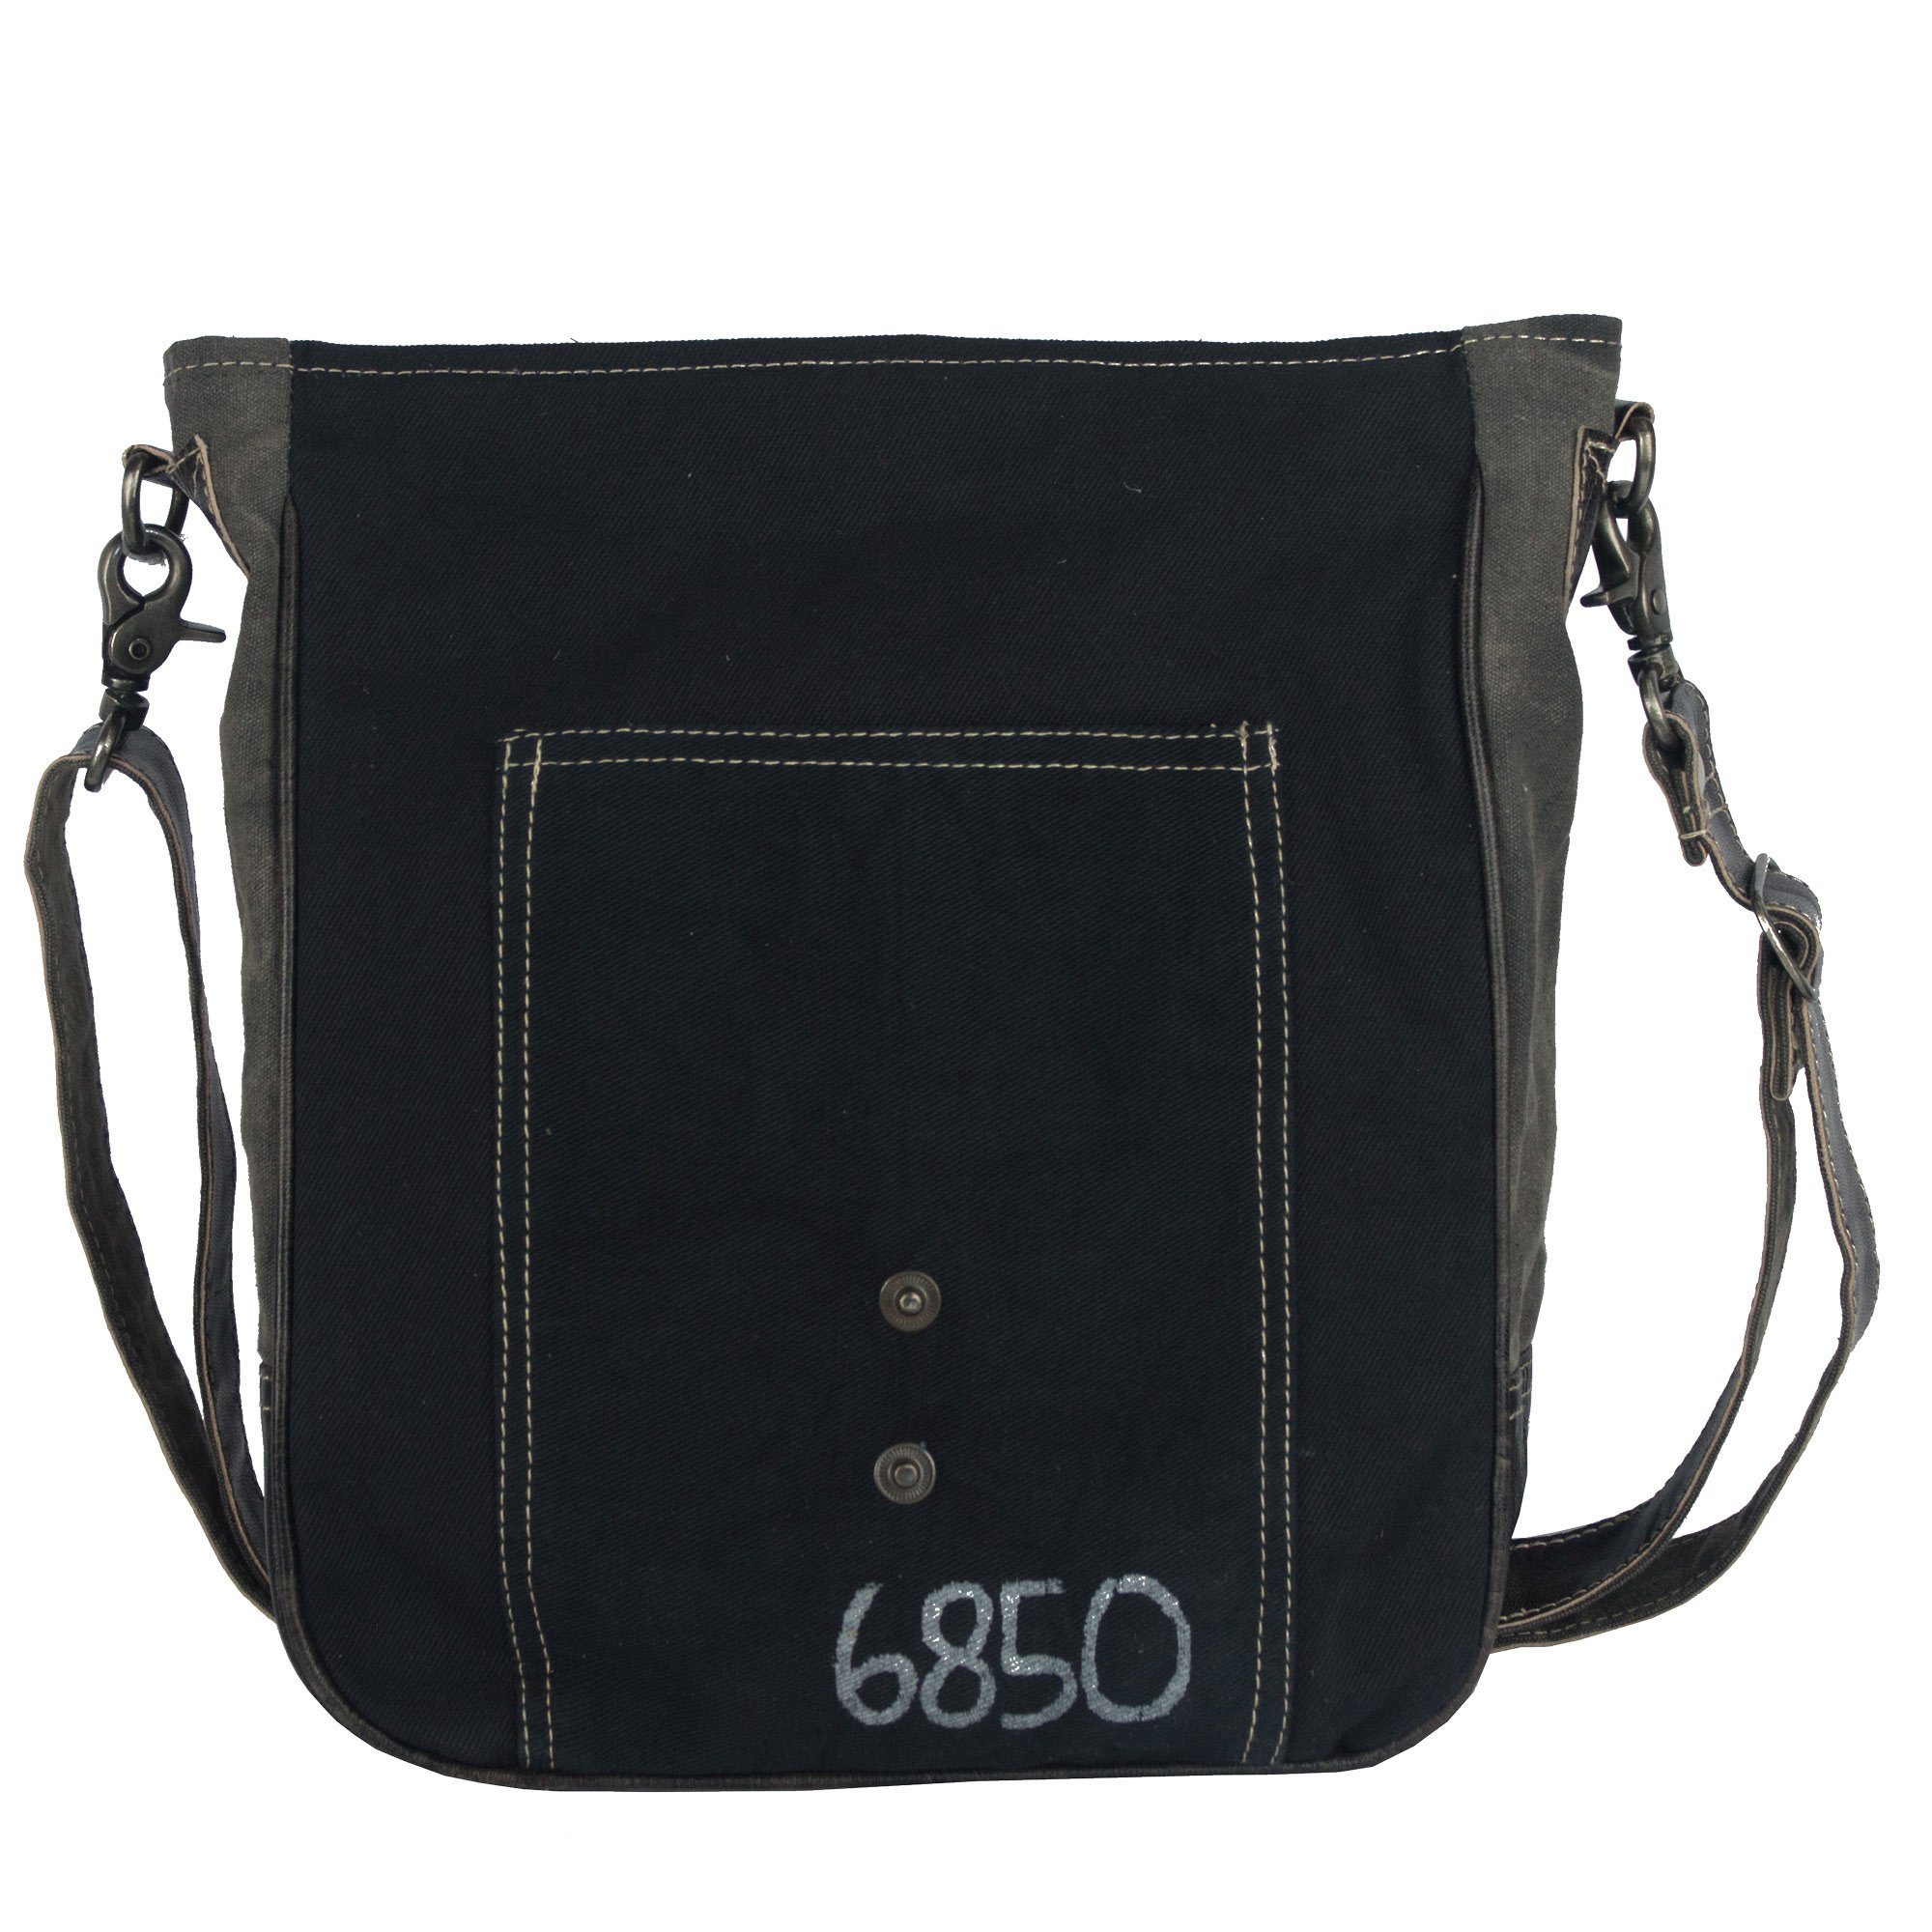 Sunsa Umhängetasche Große Tasche Messenger bag mit Pferde A4 Umhängetasche 52498 . geeignet Schwarze Canvas Aufdruck